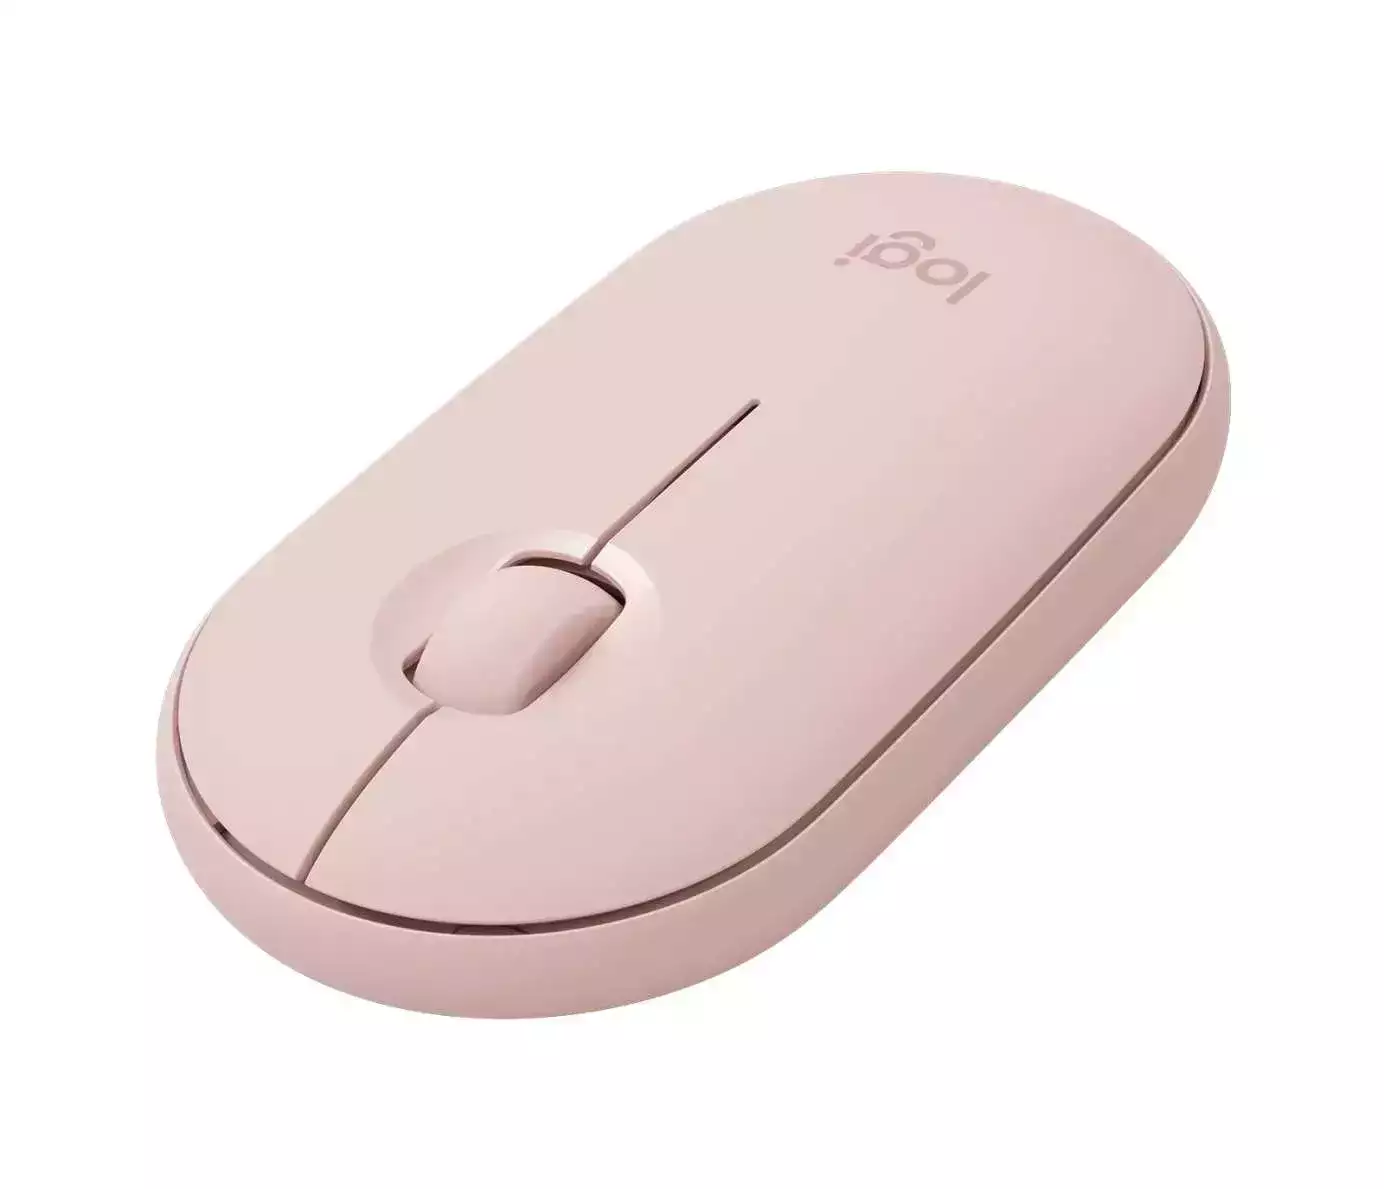 Logitech M350 Pebble Kablosuz Mouse Rose 910-005717